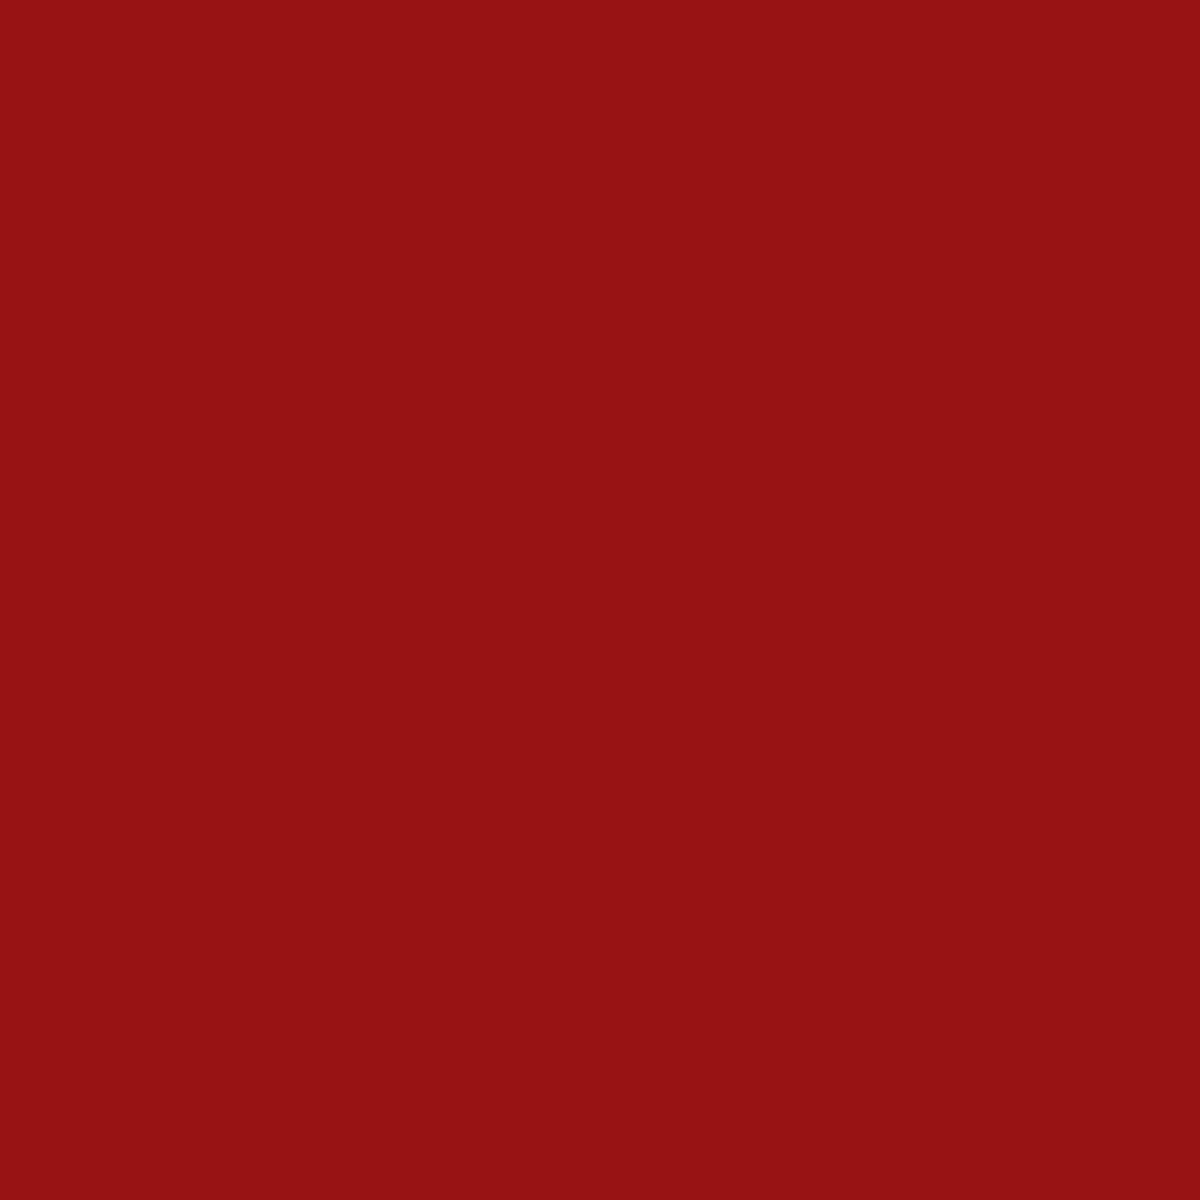 3M Film couleur translucide 3630-73 rouge foncé 1,22m x 47,5m